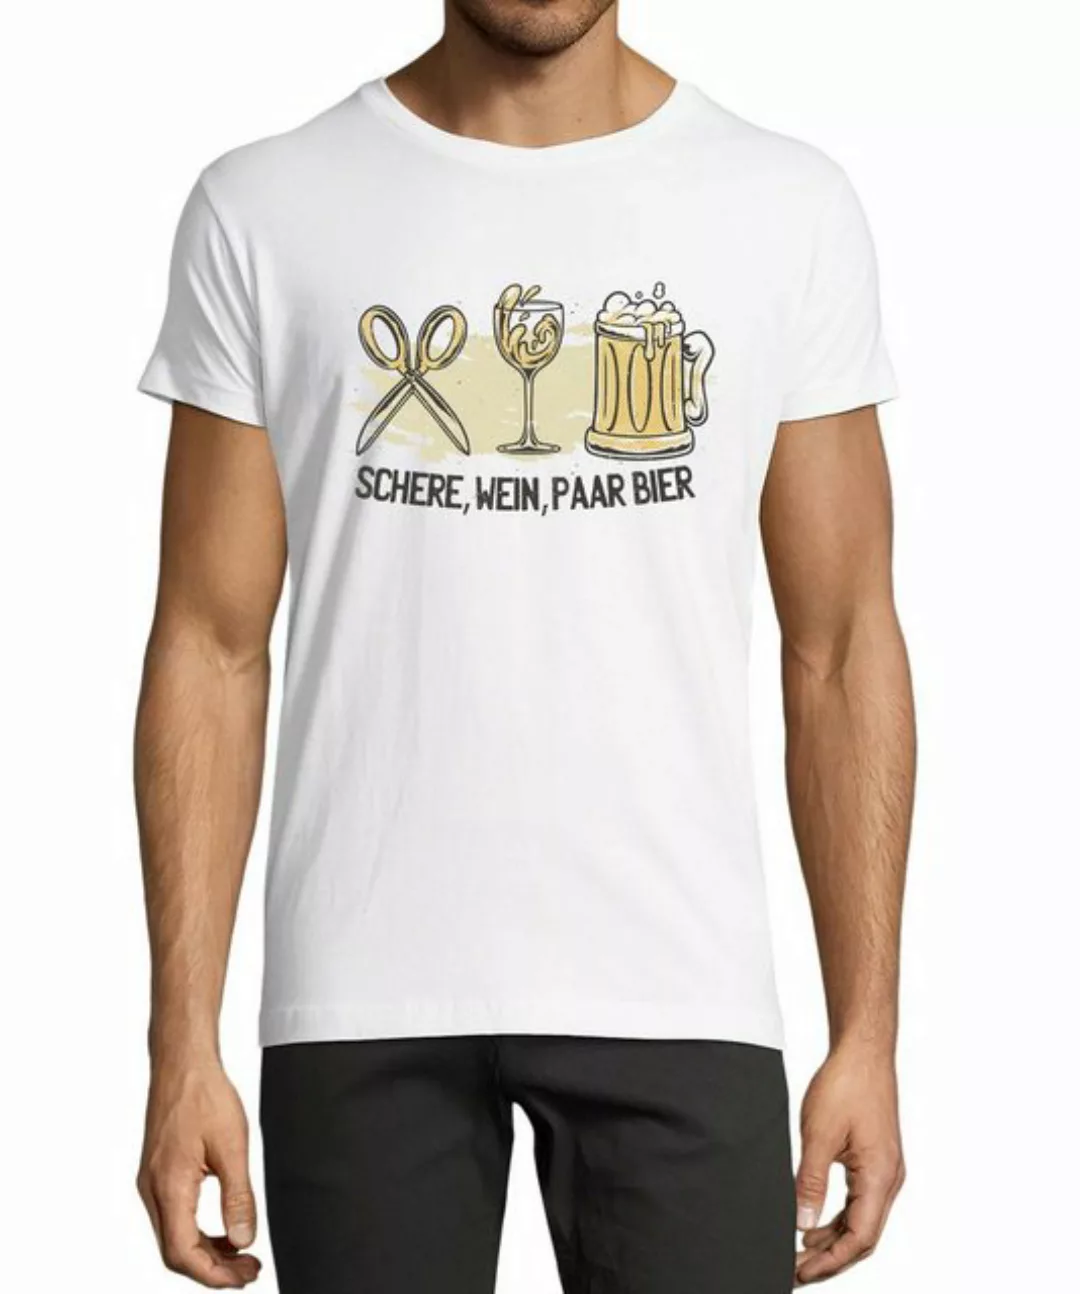 MyDesign24 T-Shirt Herren Sprüche Shirt - Trinkshirt Schere, Wein, Paar Bie günstig online kaufen